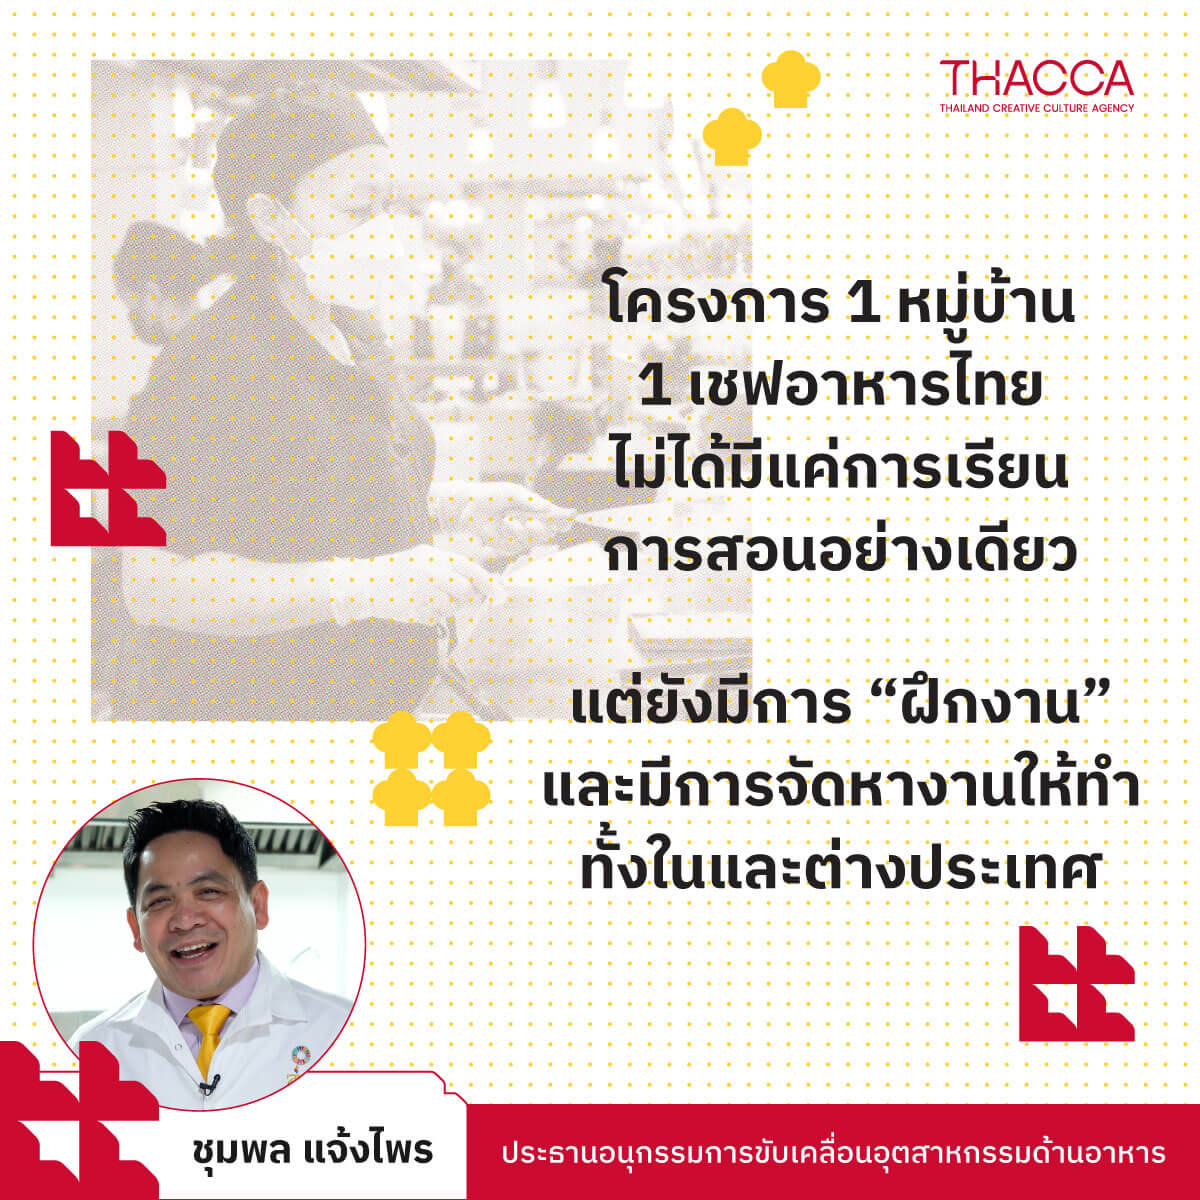 “โครงการ 1 หมู่บ้าน 1 เชฟอาหารไทย ไม่ได้มีแค่การเรียนการสอนอย่างเดียว แต่ยังมีการ ‘ฝึกงาน’ และมีการจัดหางานให้ทำทั้งในและต่างประเทศ”